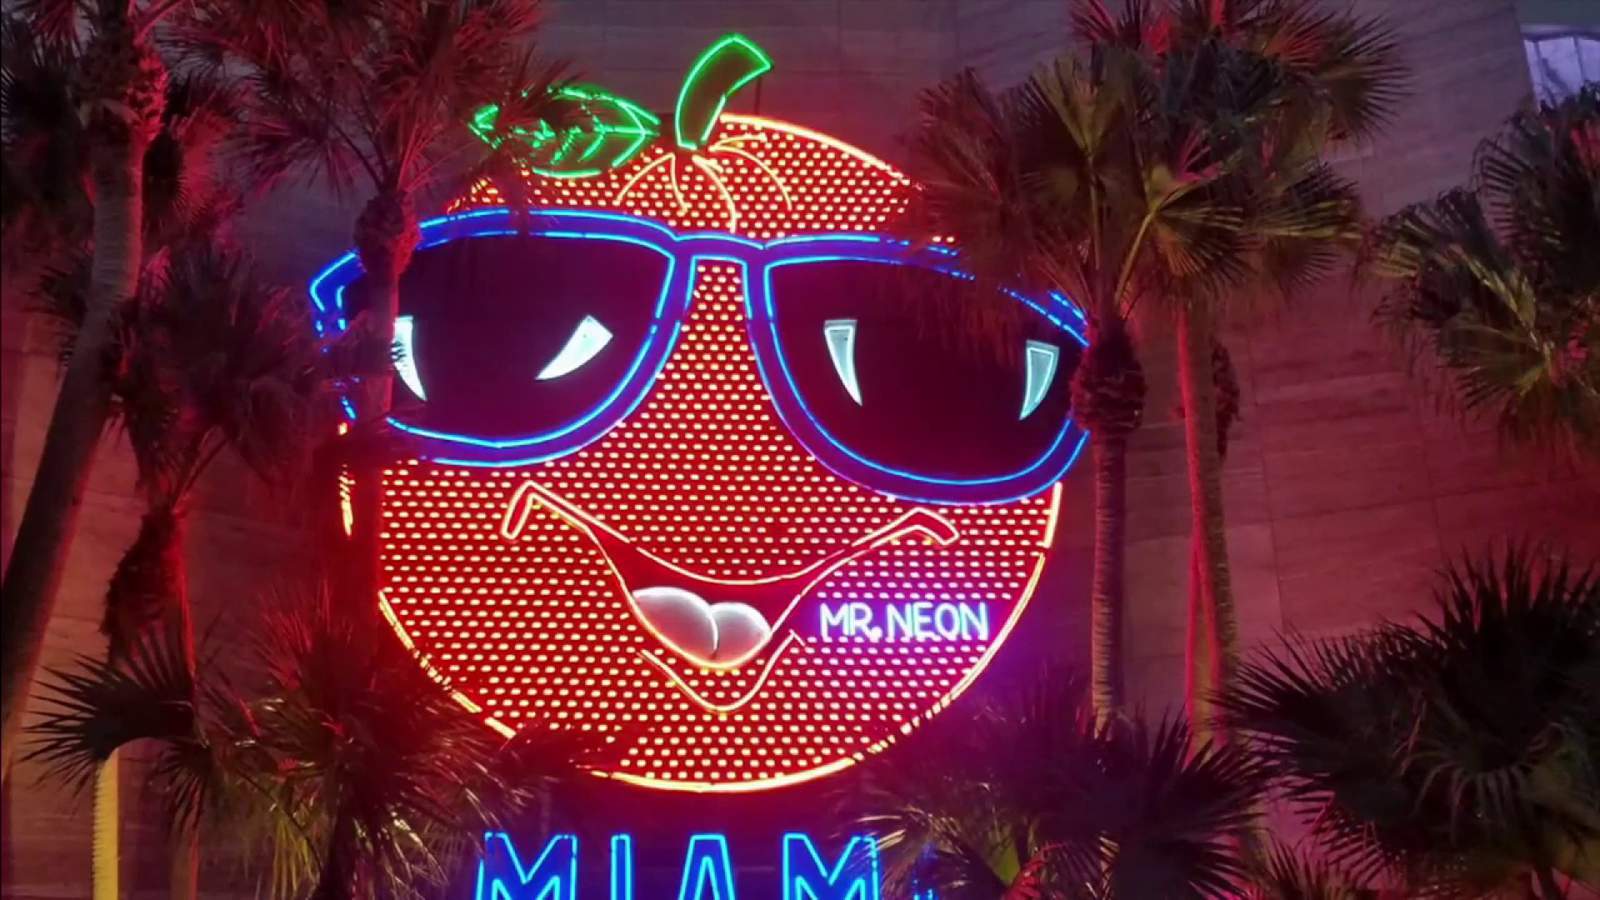 Mr. Neon won’t be putting up Miami’s Big Orange this NYE